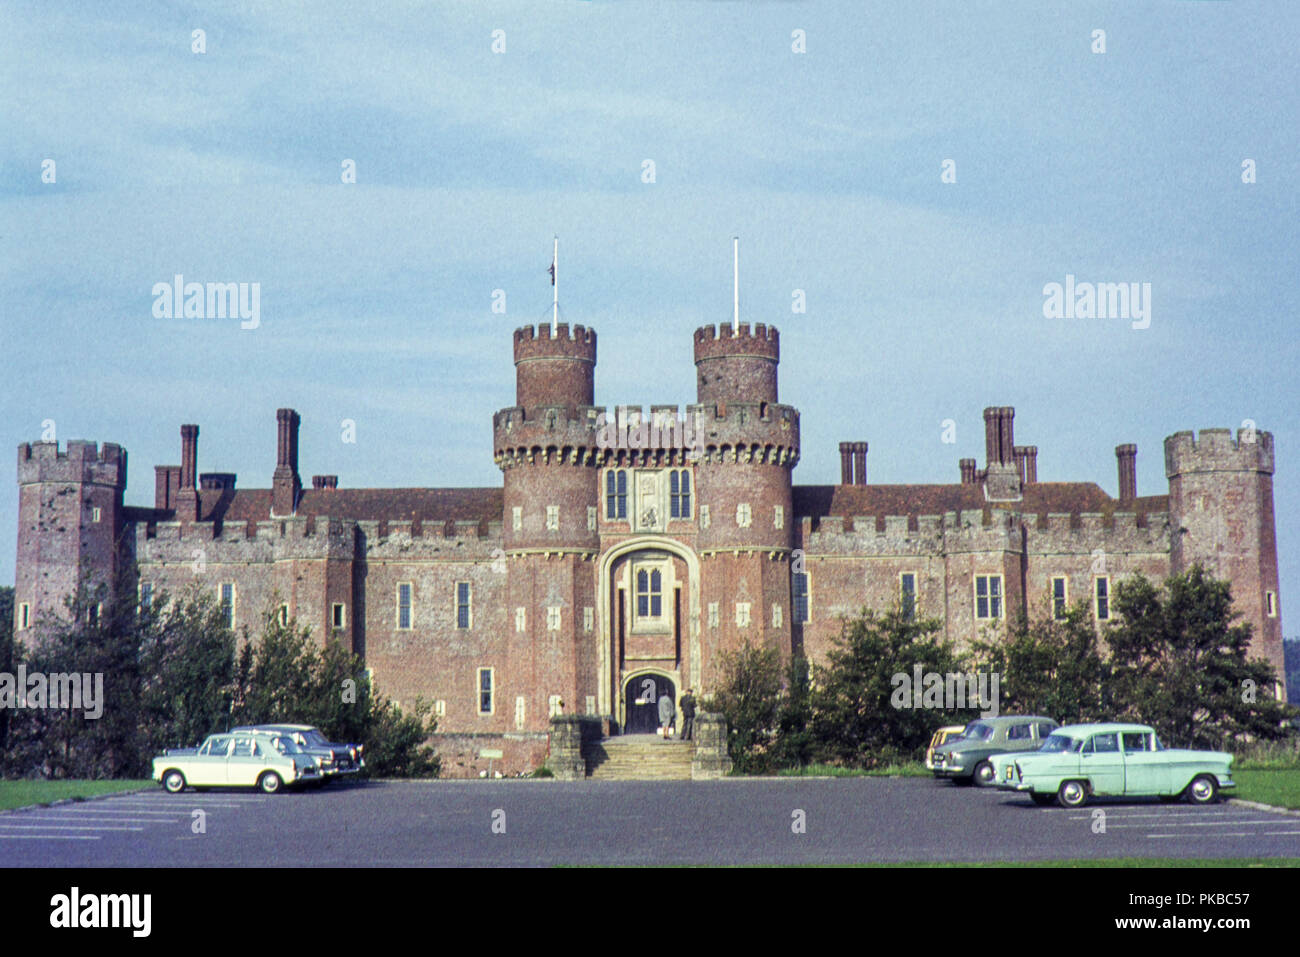 Posiblemente la imagen tomada por un fotógrafo amateur durante un día visitando la casa señorial Castillo de Herstmonceux, Hailsham, East Sussex, durante el período de 1960 hay coches aparcados en el aparcamiento Foto de stock